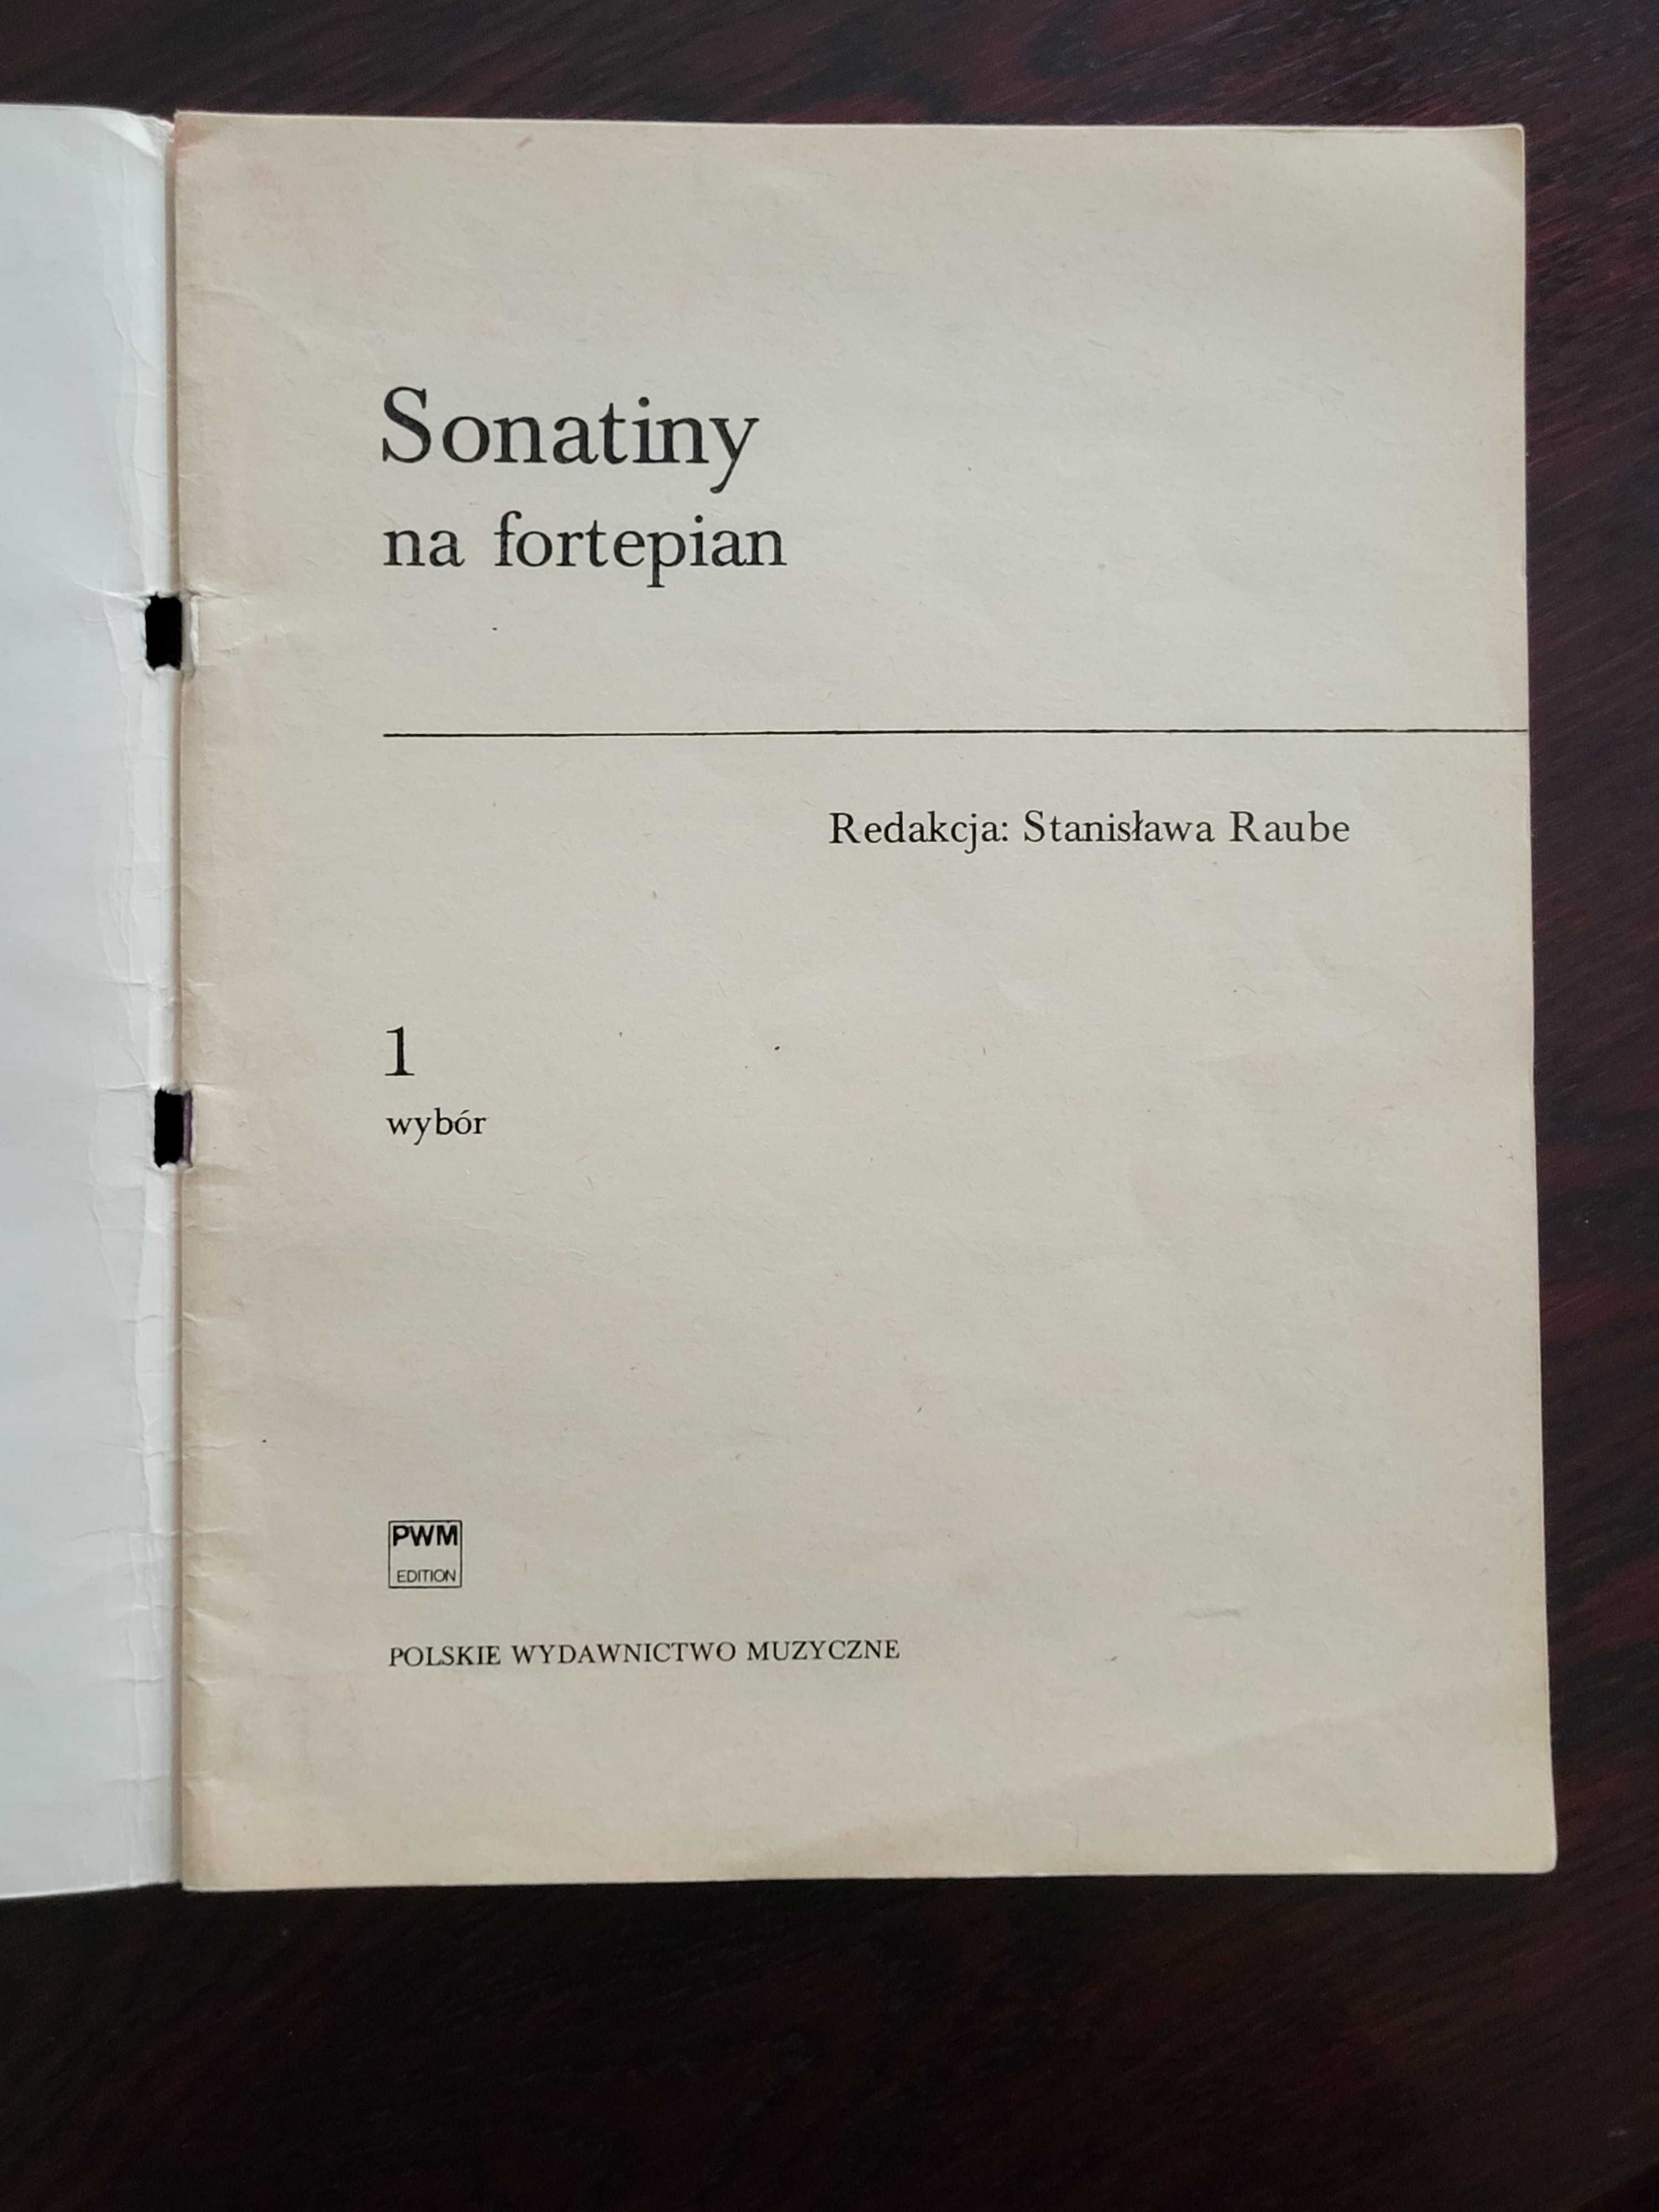 SONATINY na fortepian cz. 1, S. Raube